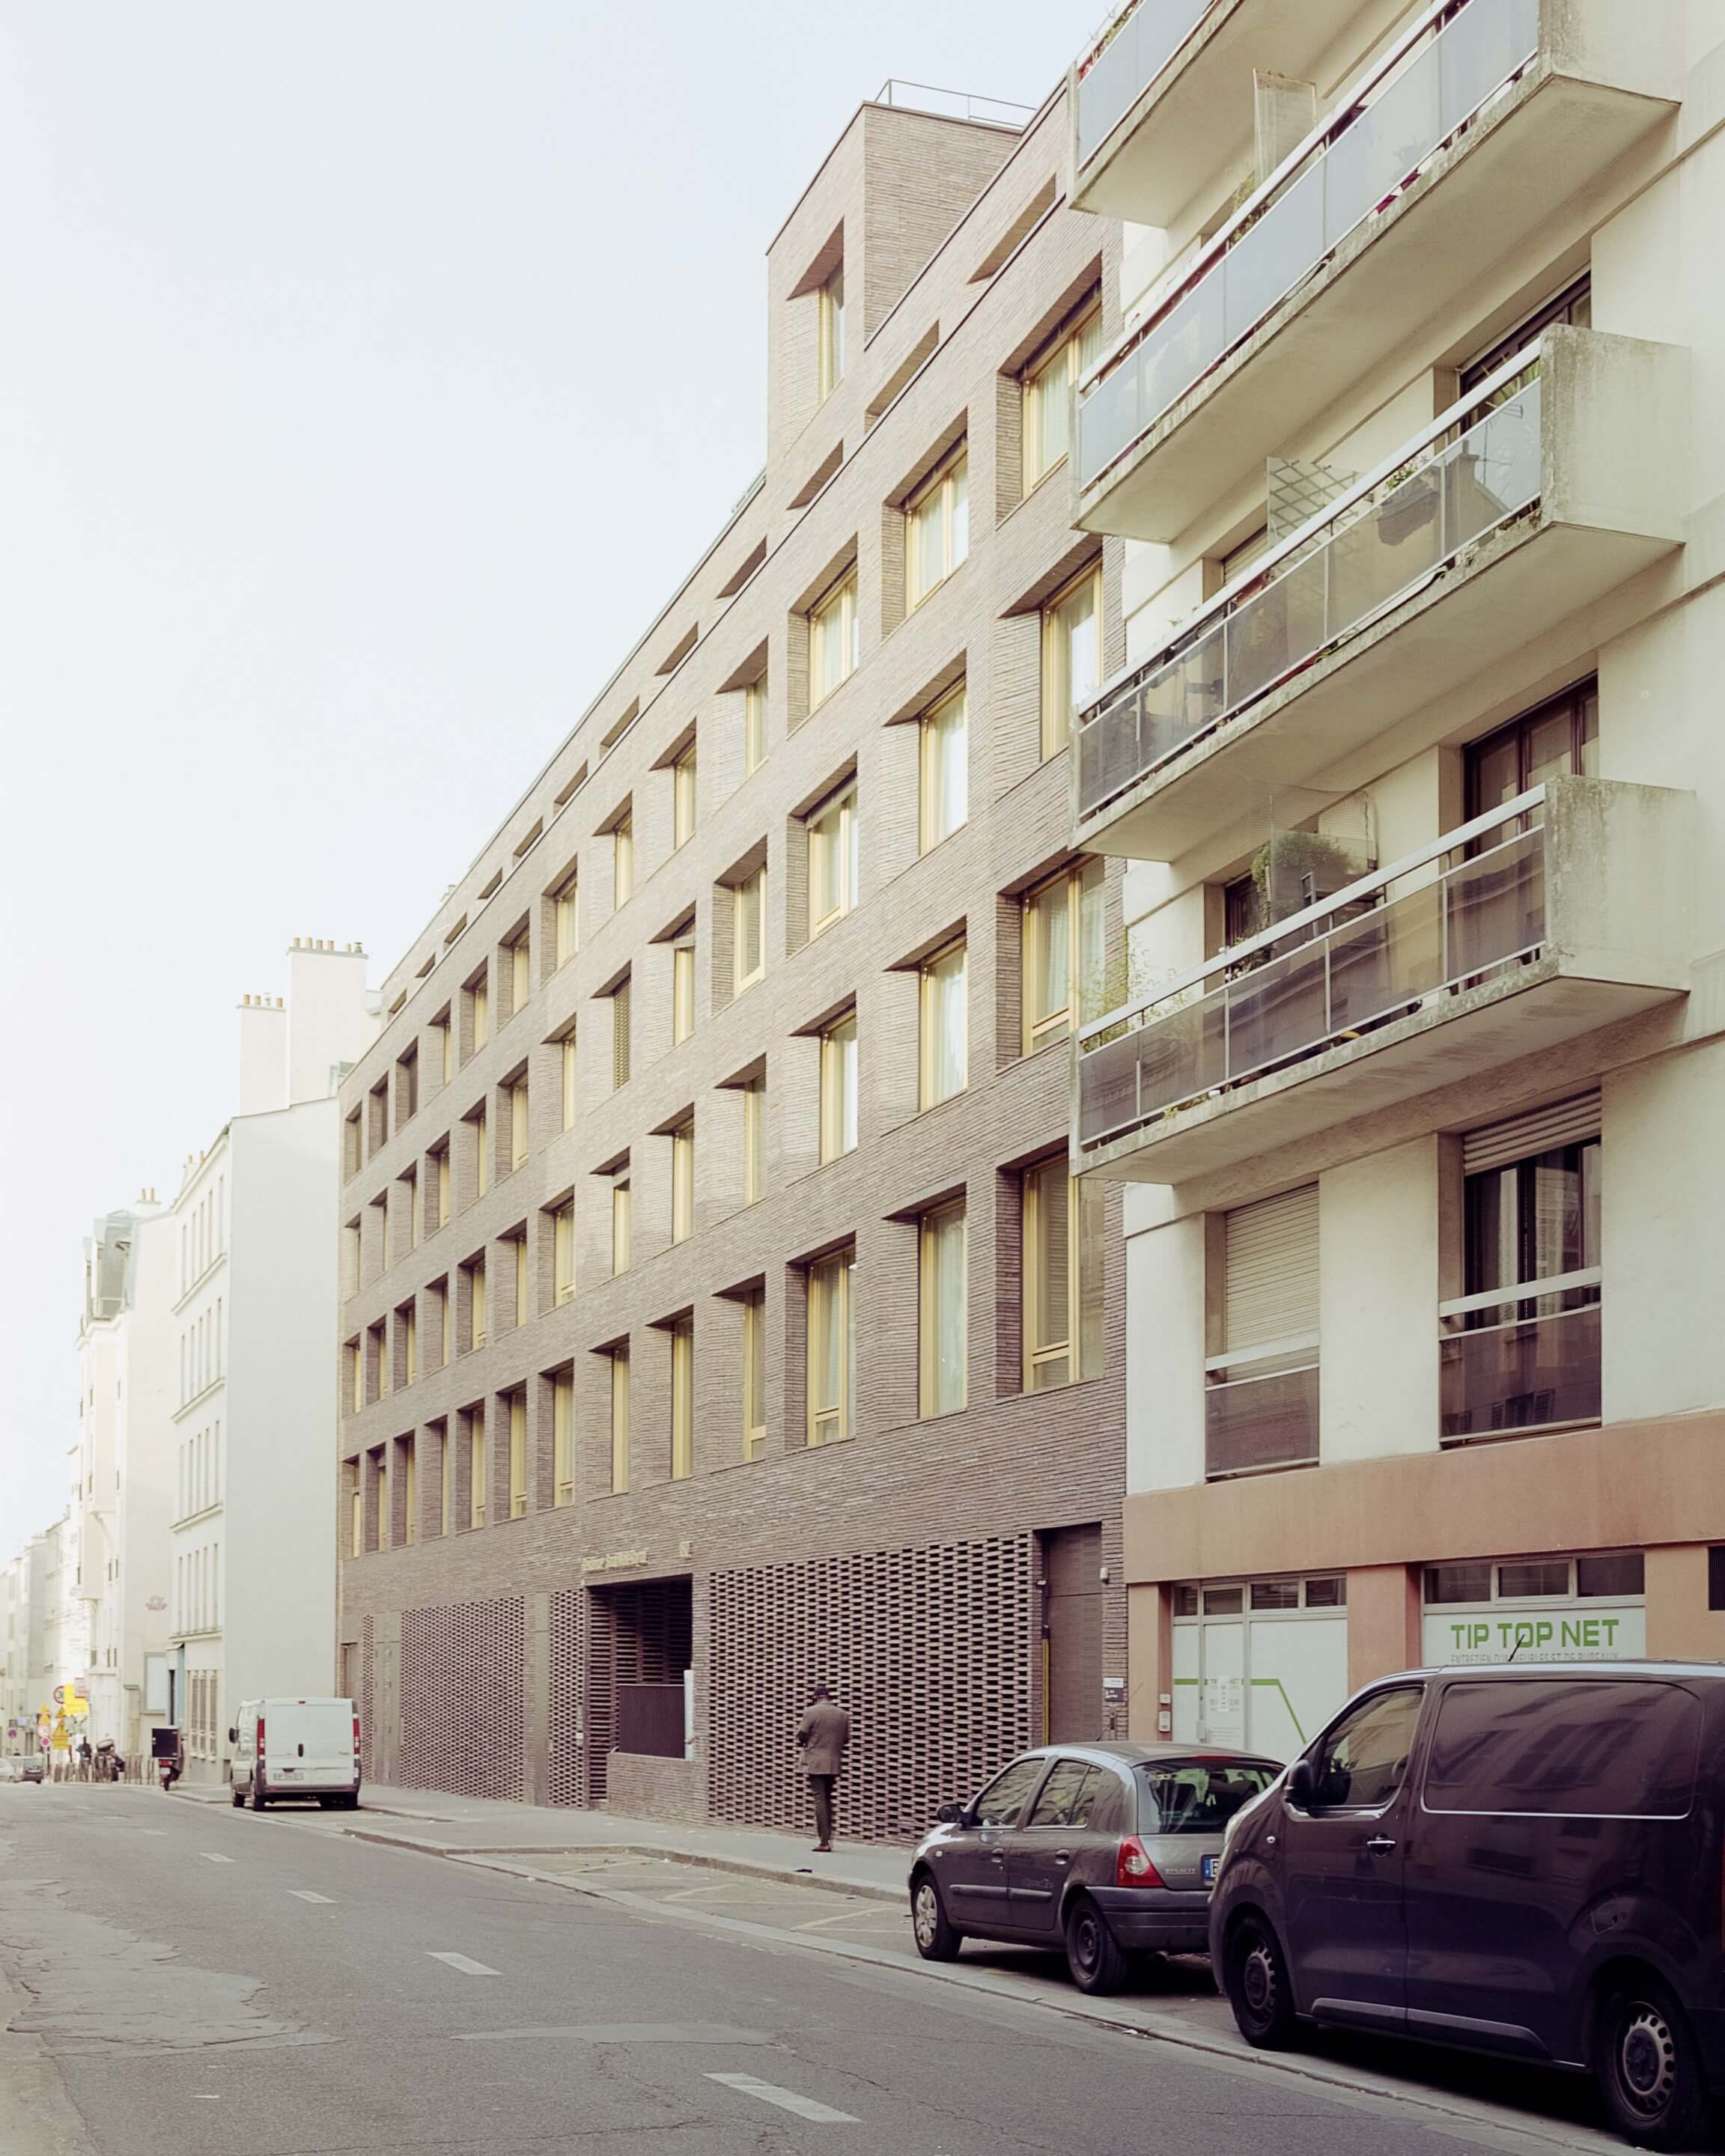 Street view of buildings in Paris